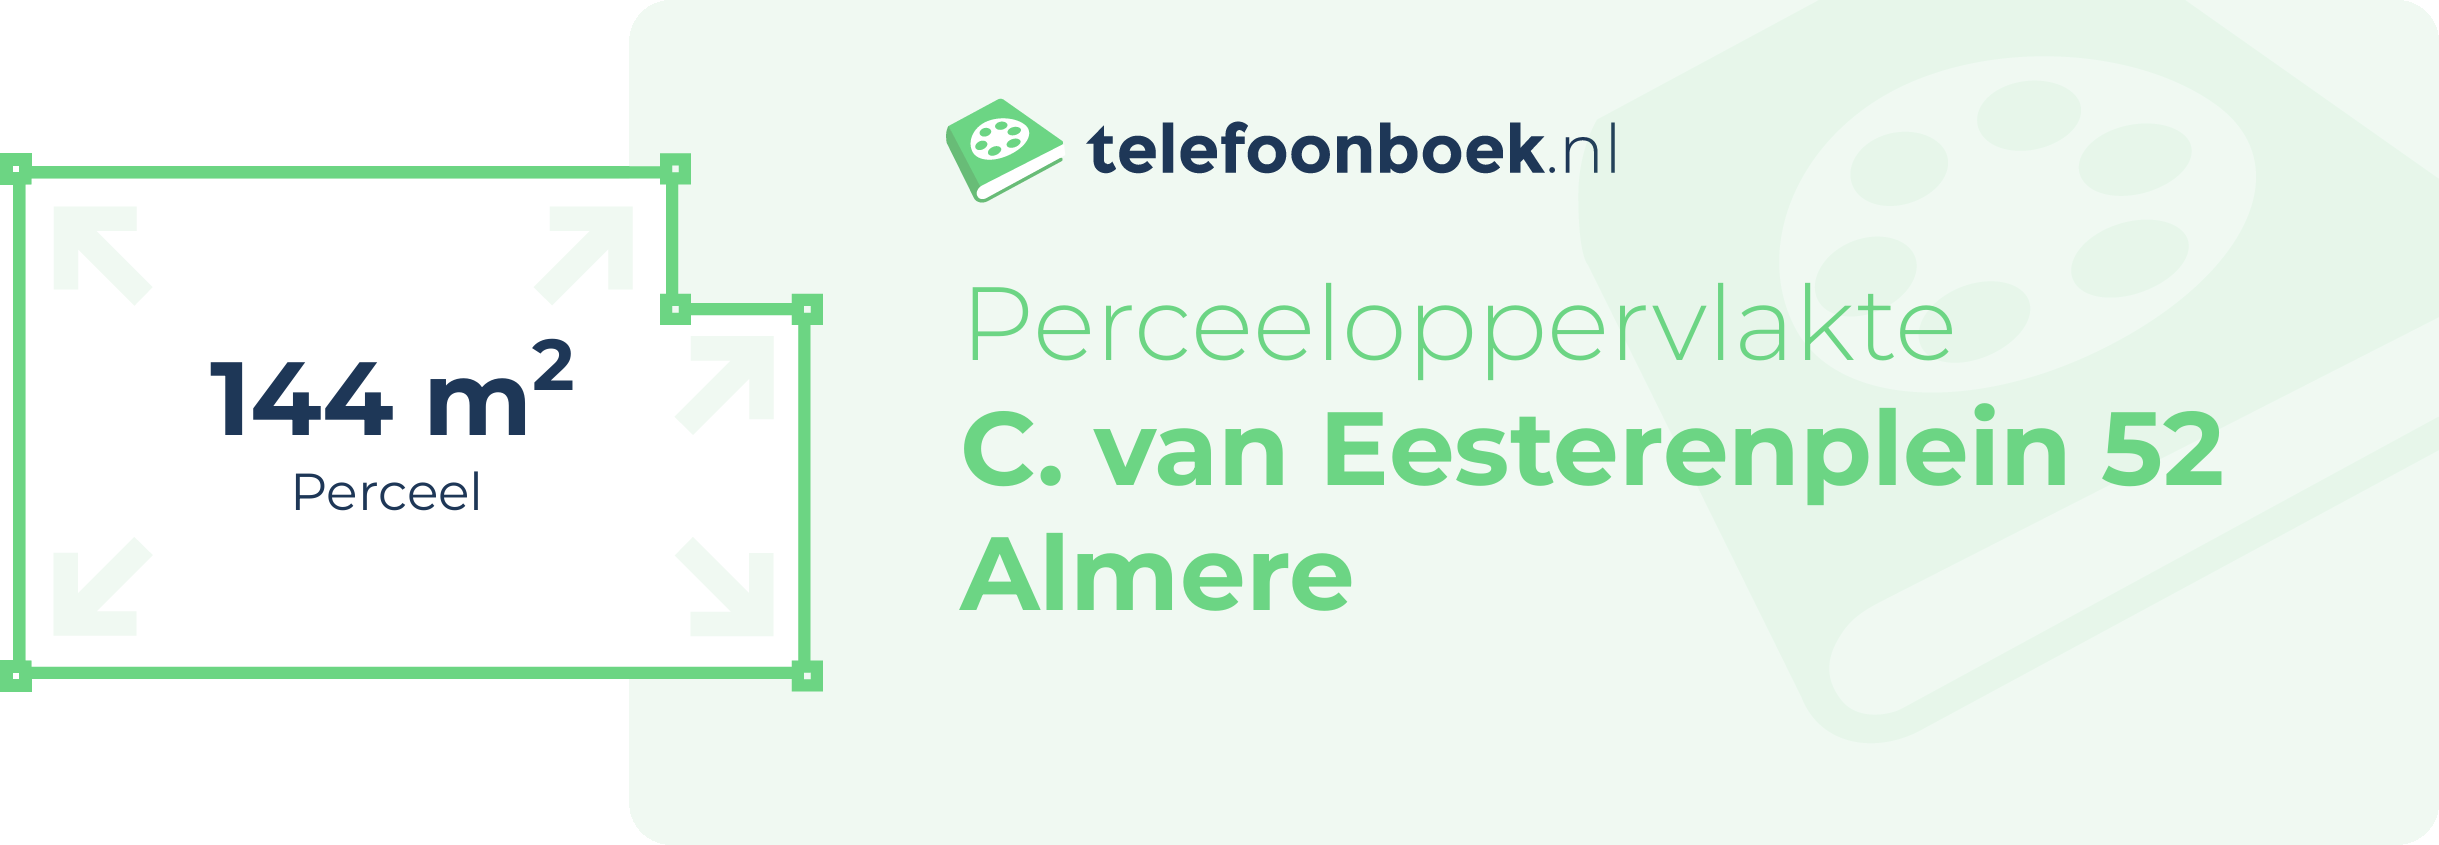 Perceeloppervlakte C. Van Eesterenplein 52 Almere